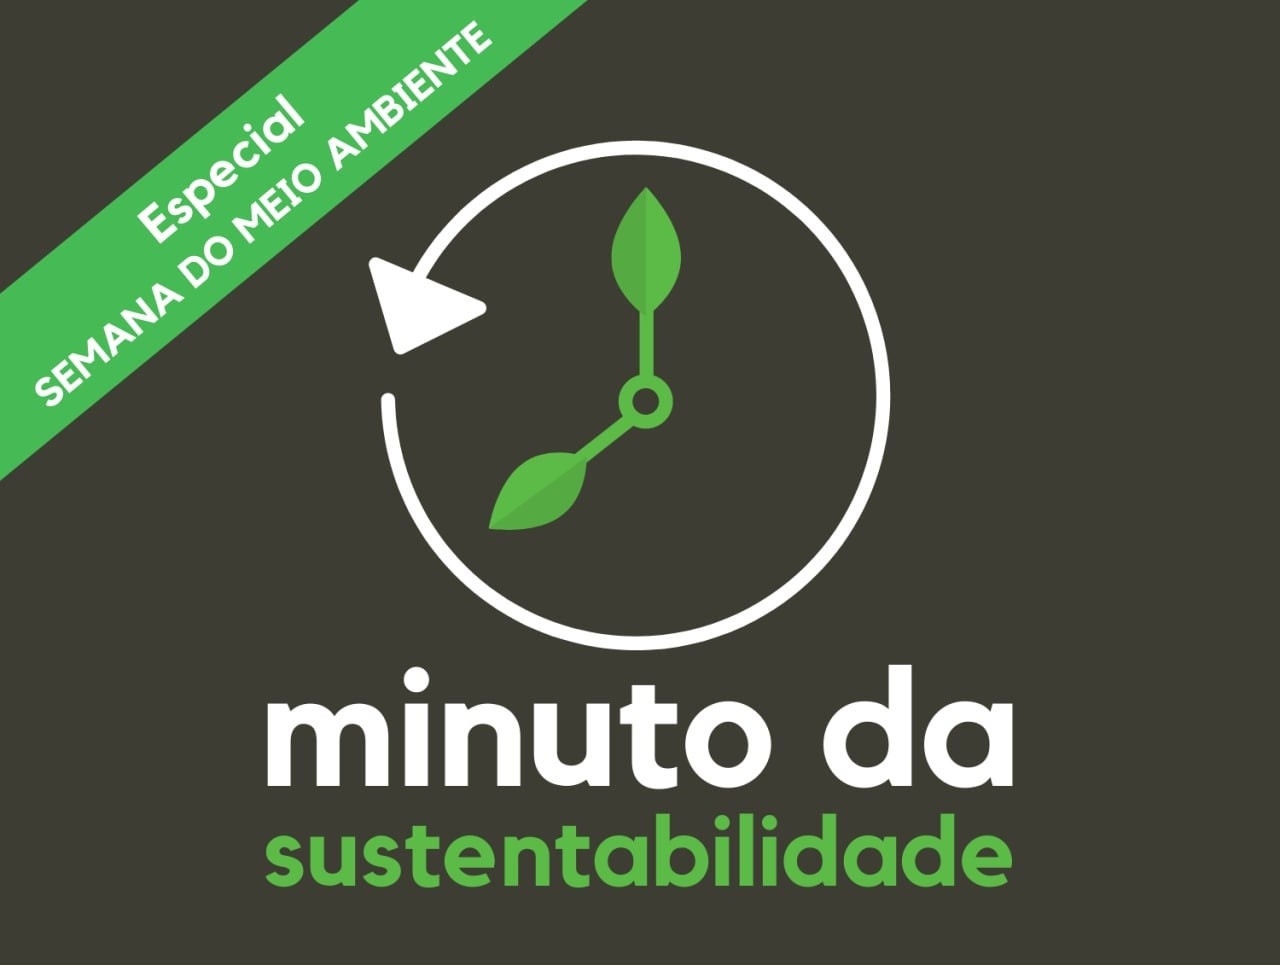 Podcast ensina sobre sustentabilidade e meio ambiente de forma